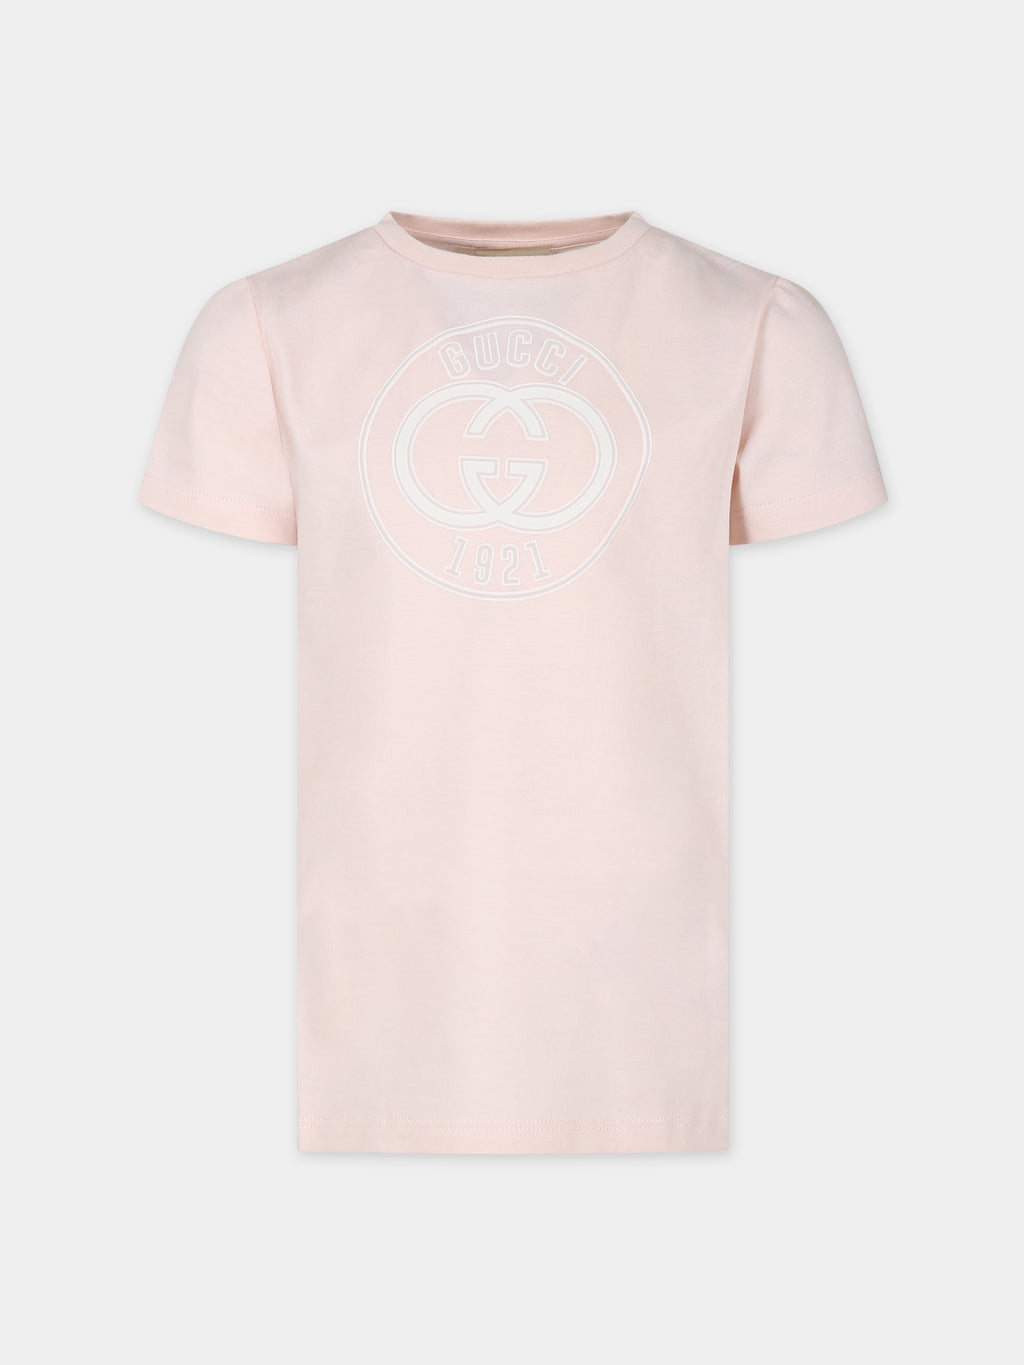 T-shirt rose pour fille avec logo Gucci 1921